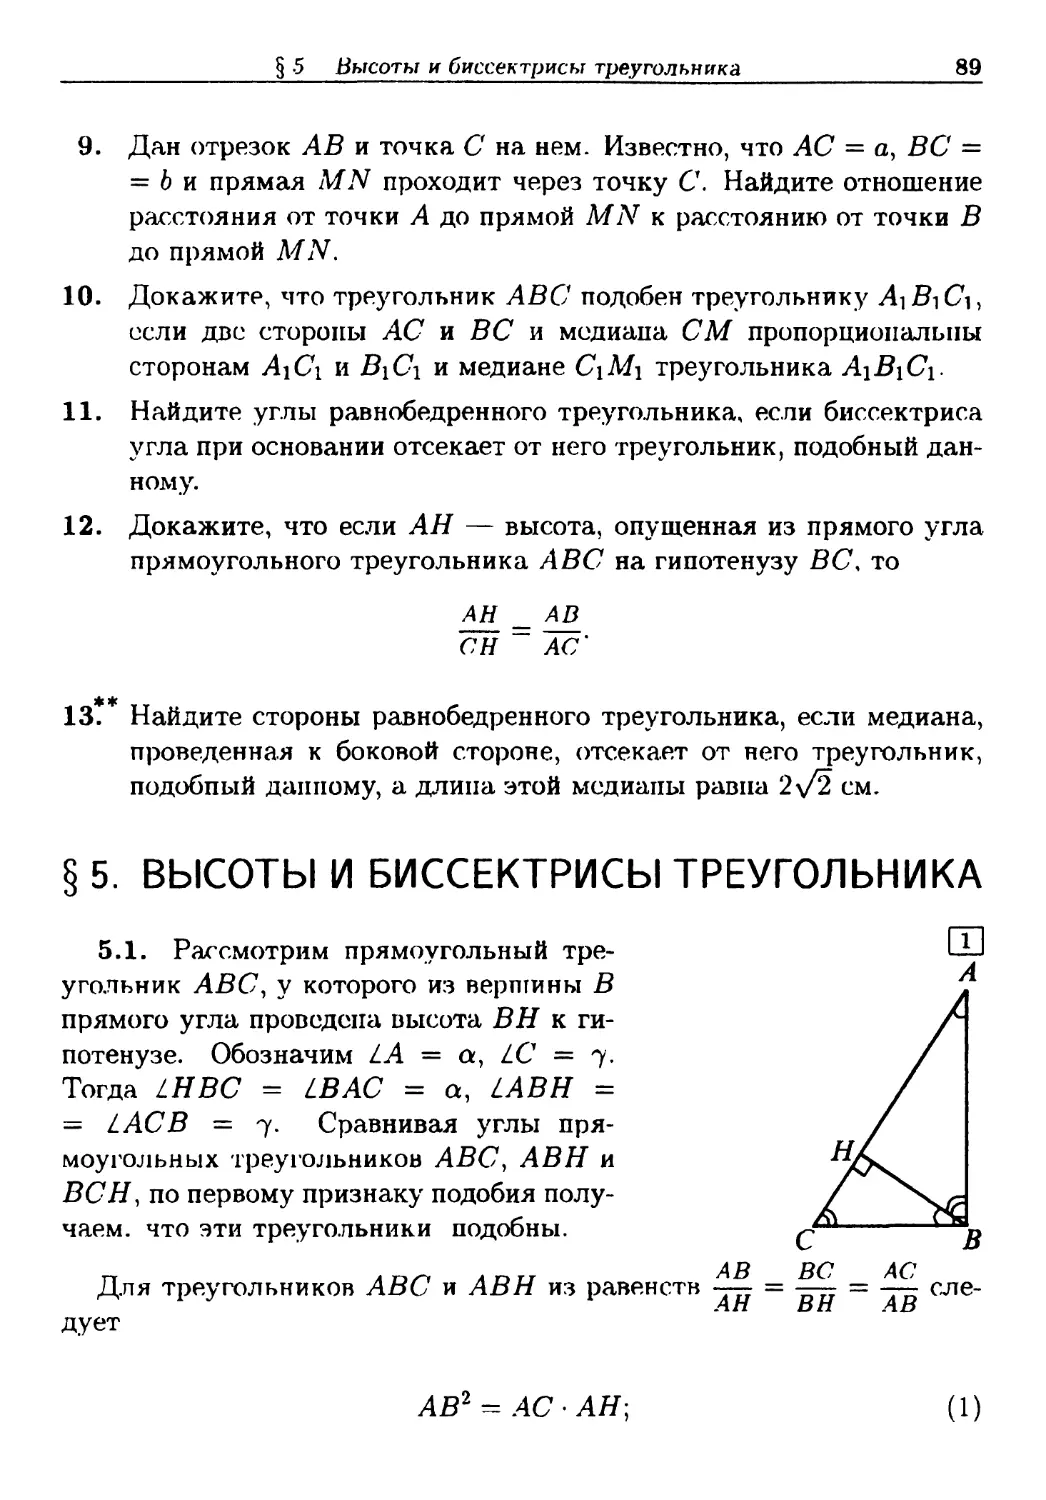 §5. Высоты и биссектрисы треугольников